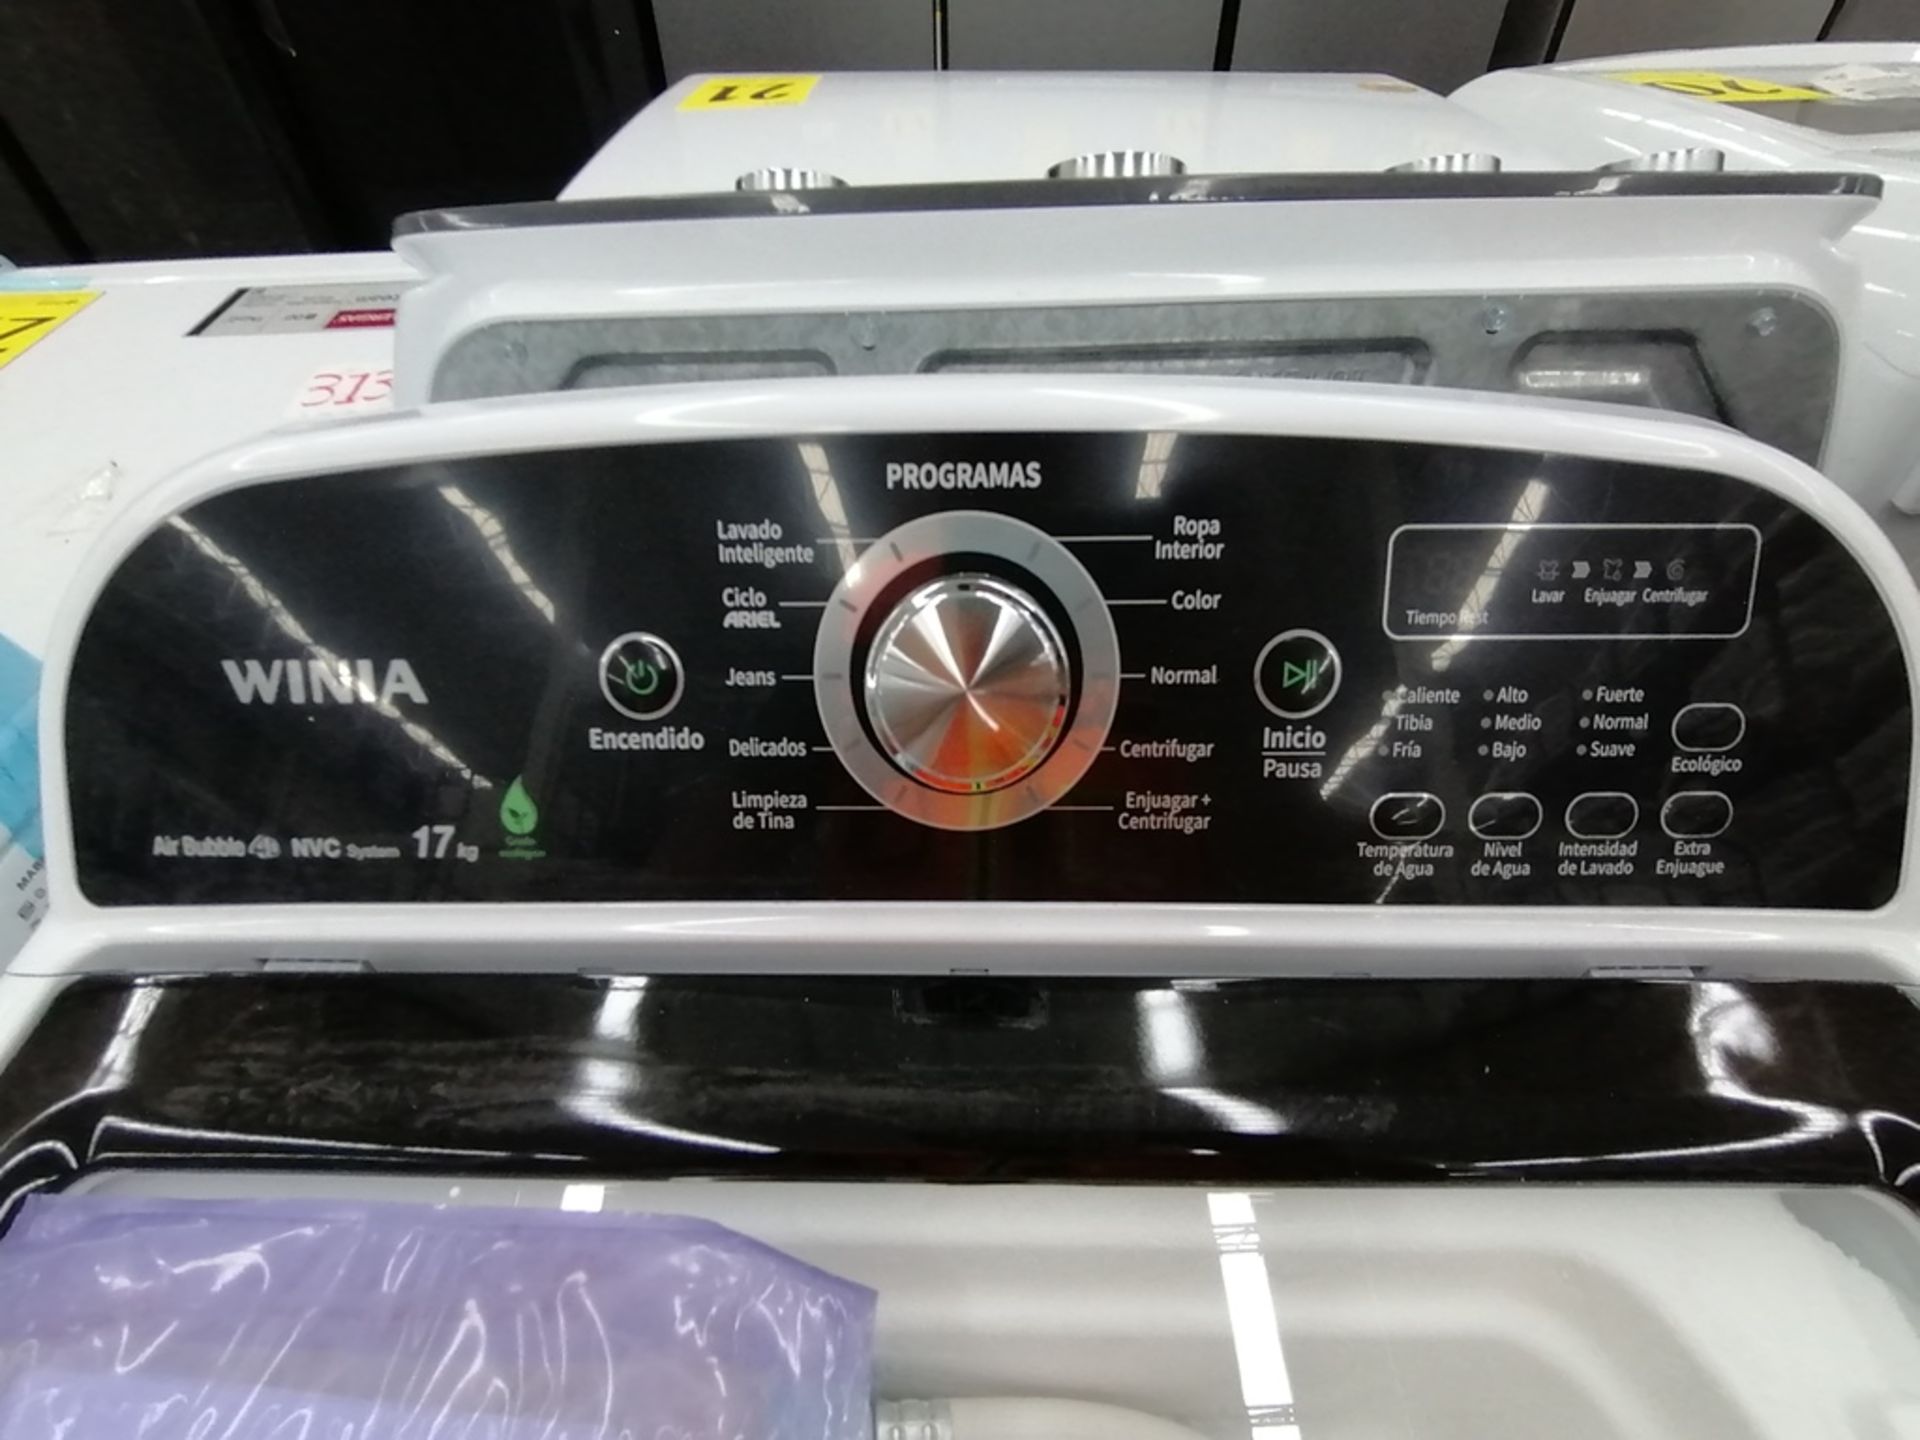 Lote de 3 lavadoras contiene: 1 Lavadora de 16KG, Marca Mabe, Modelo LMA46102VBAB02, Serie 2108S802 - Image 19 of 29